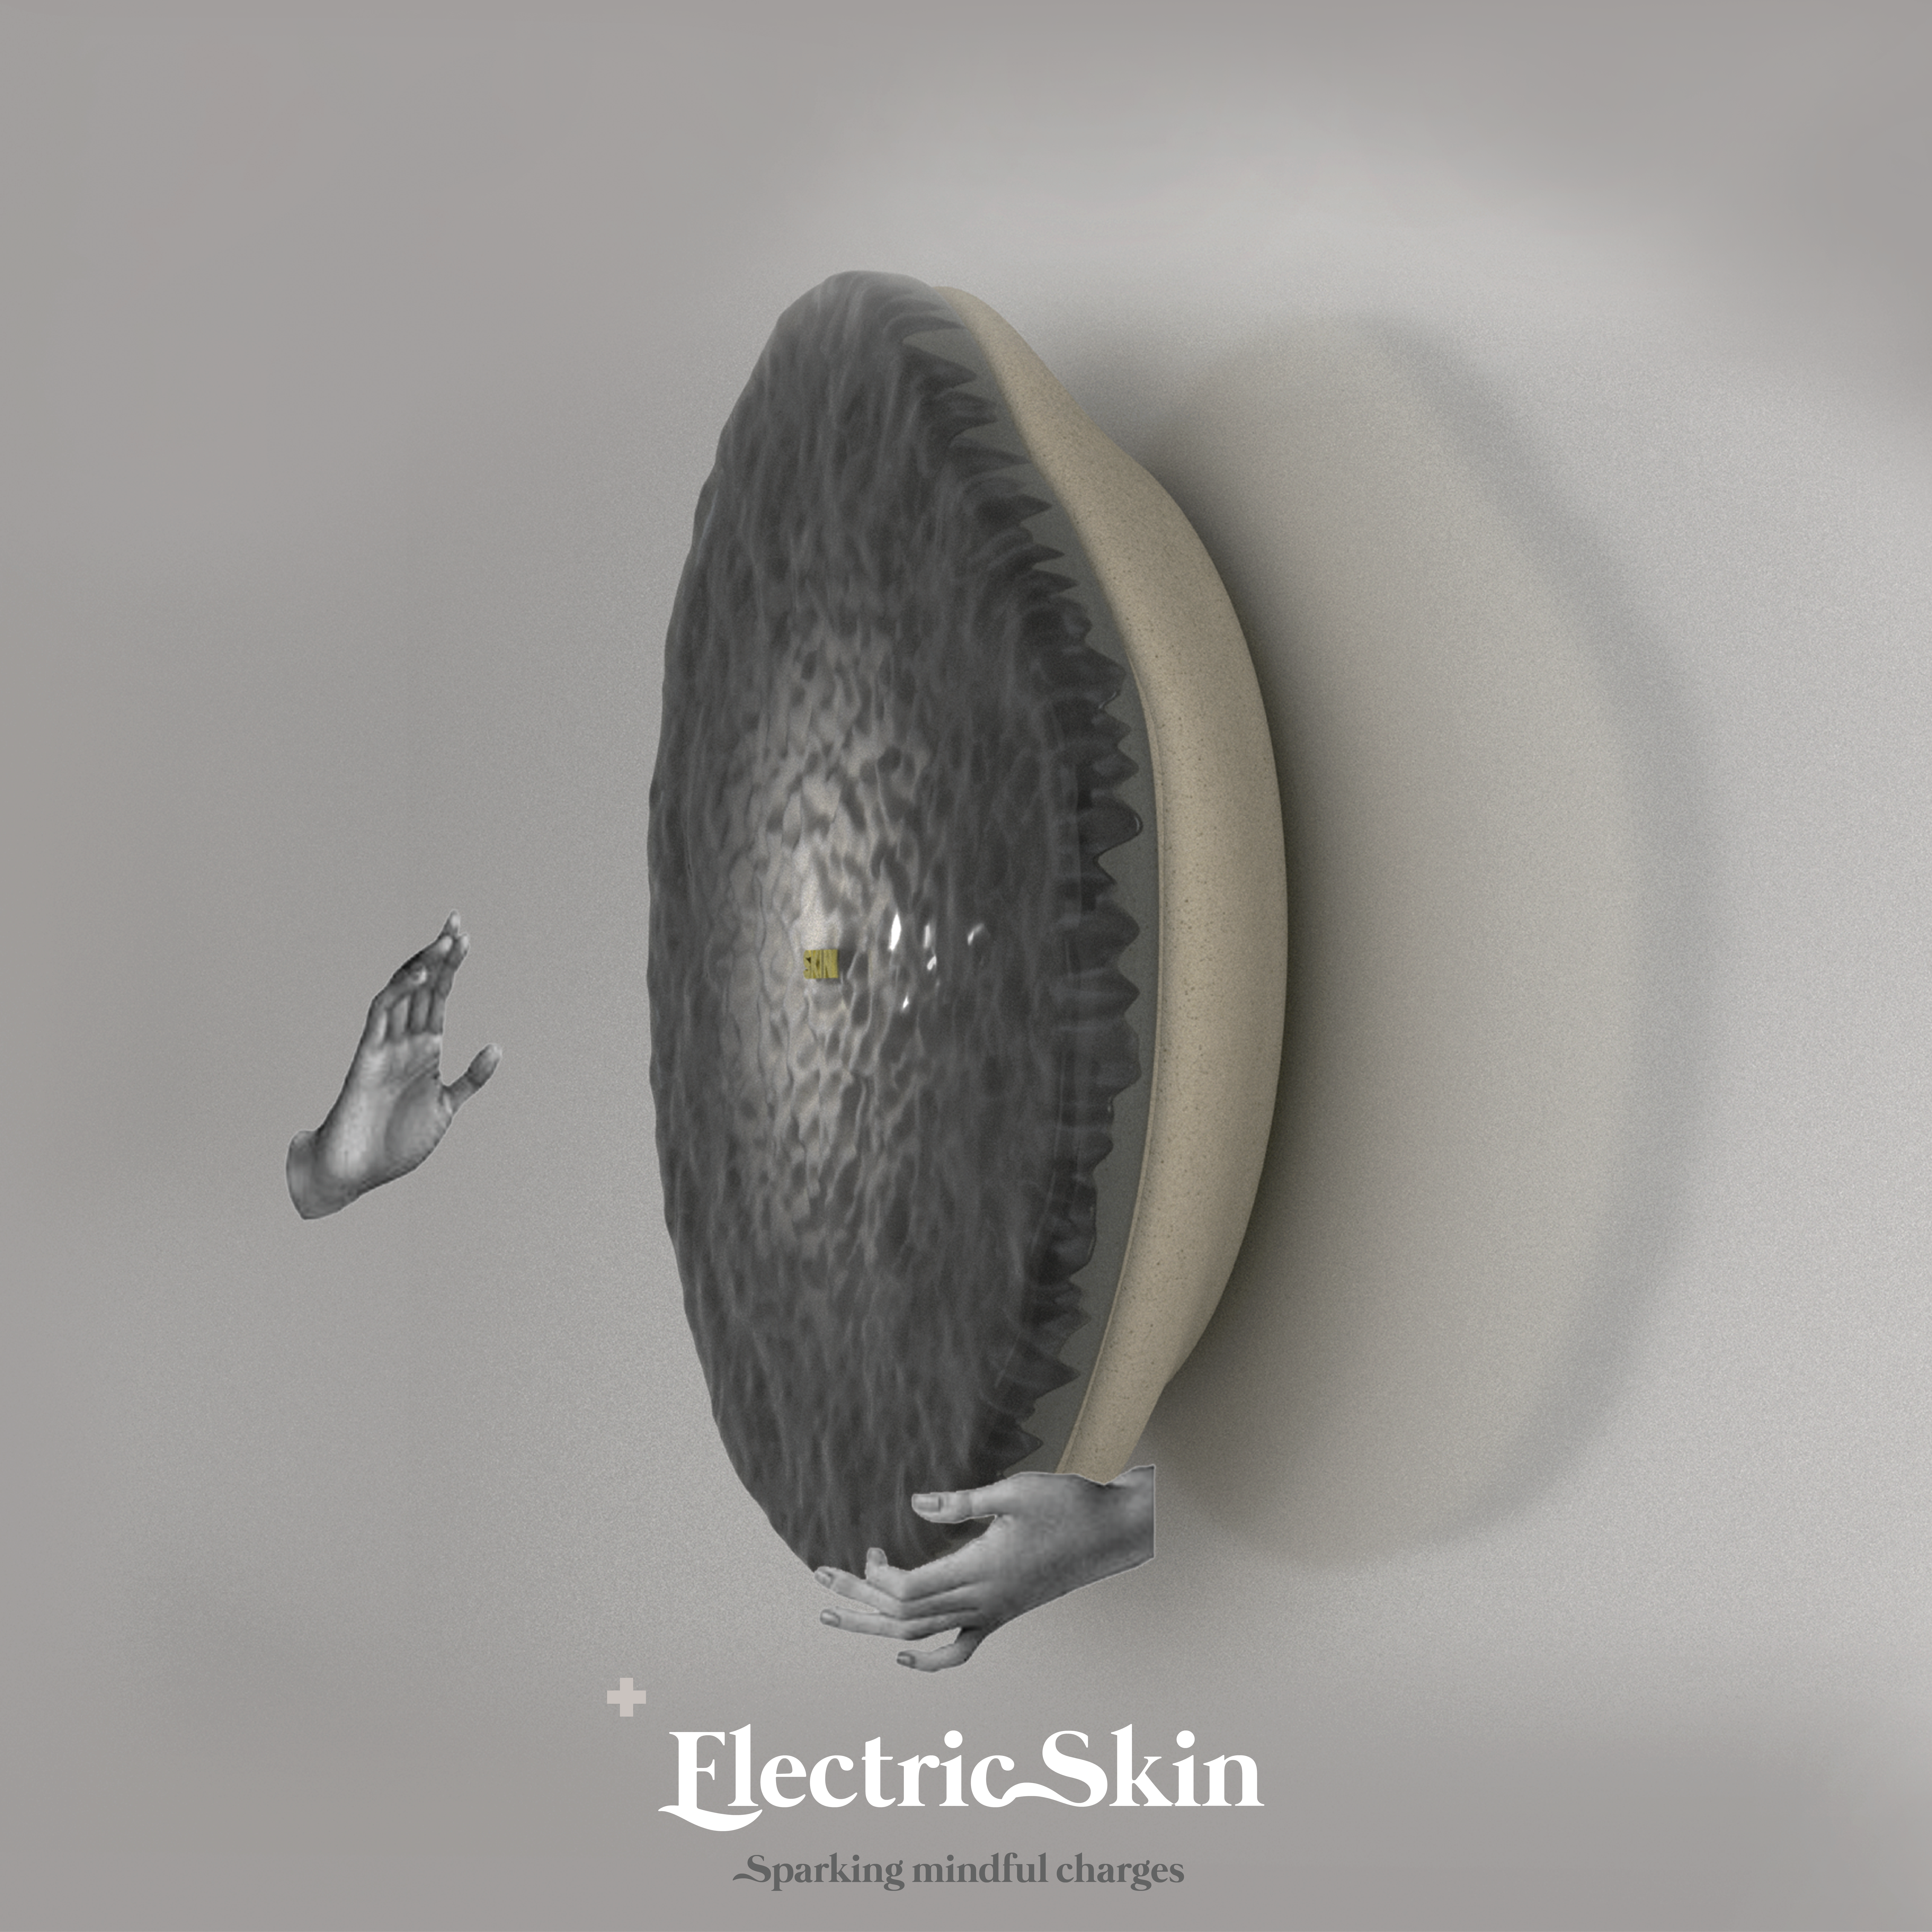 Electric Skin